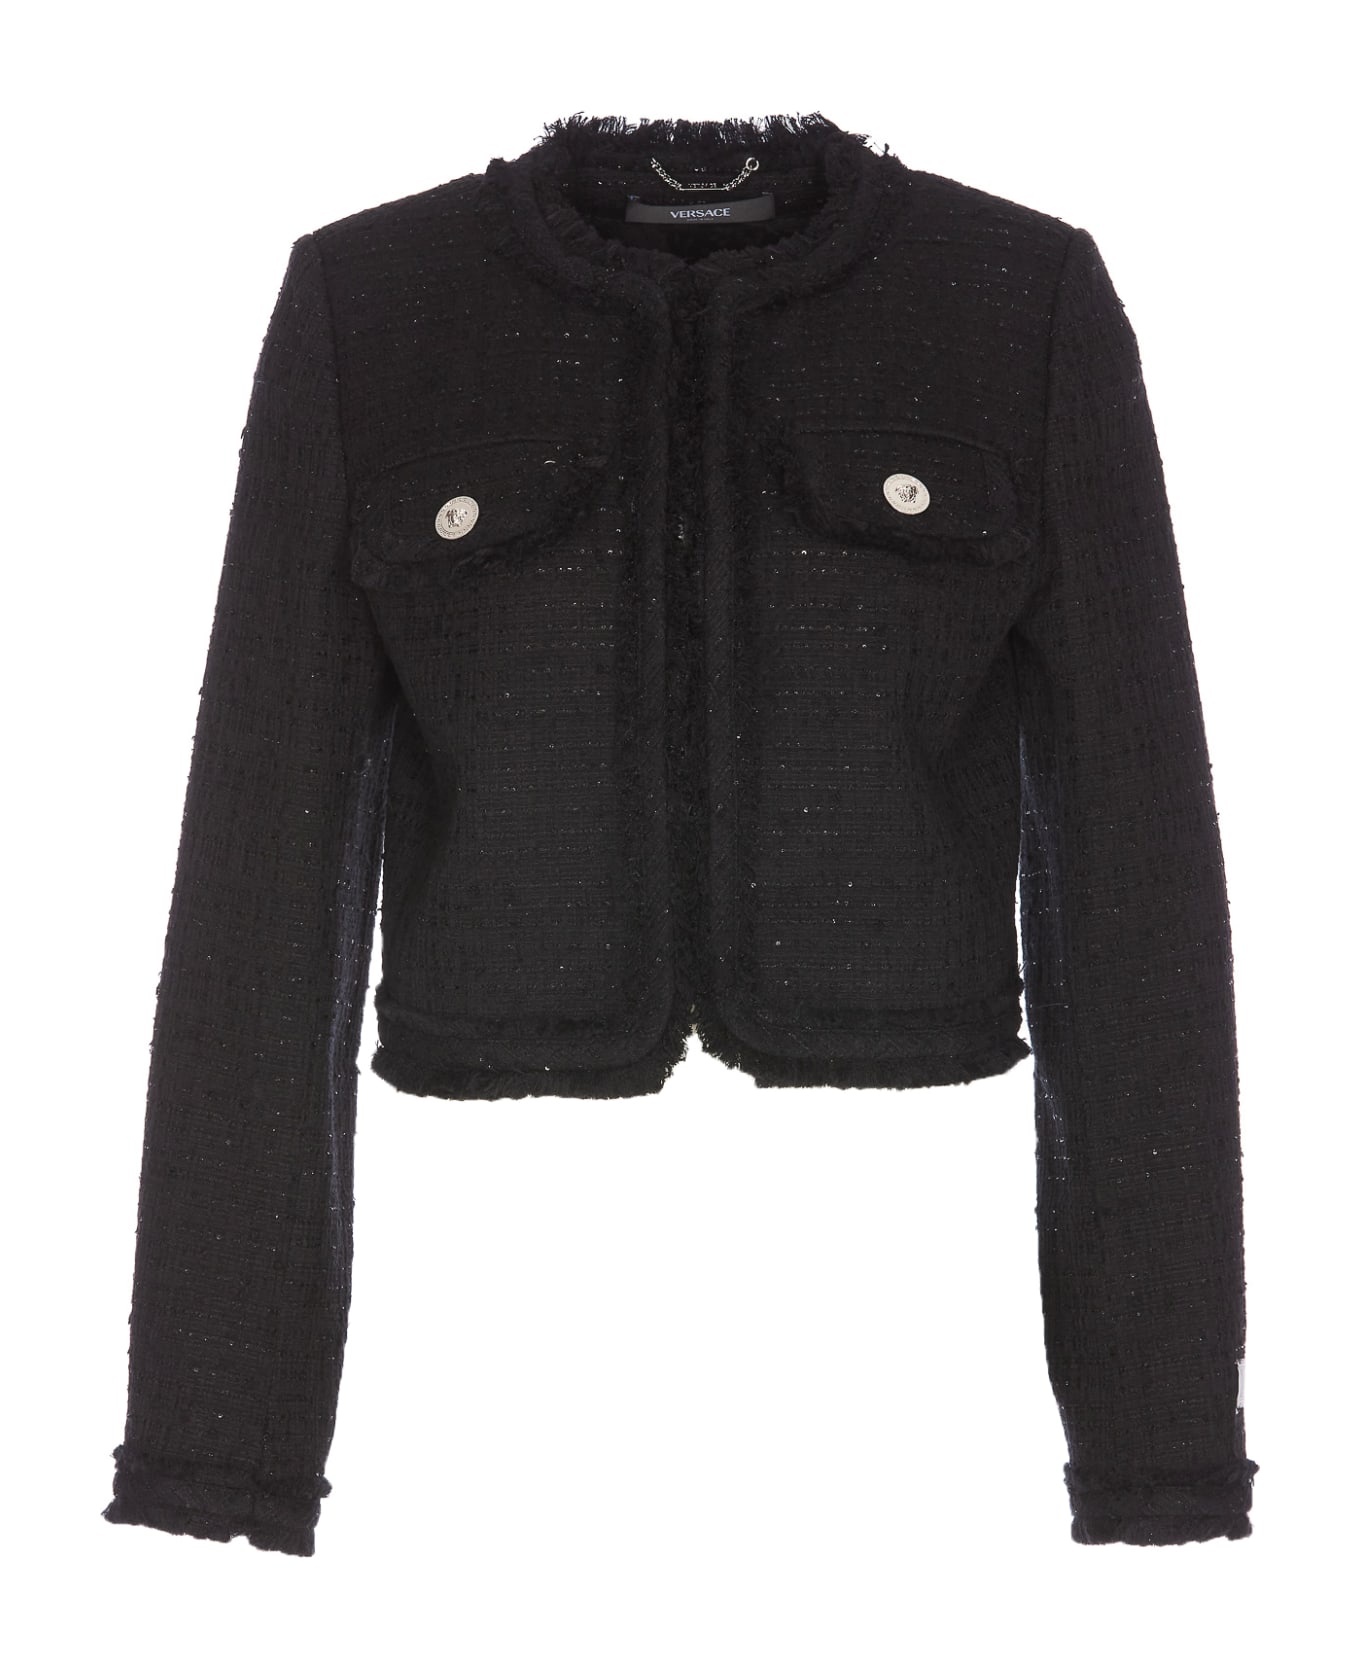 Versace Informal Tweed Jacket - Black